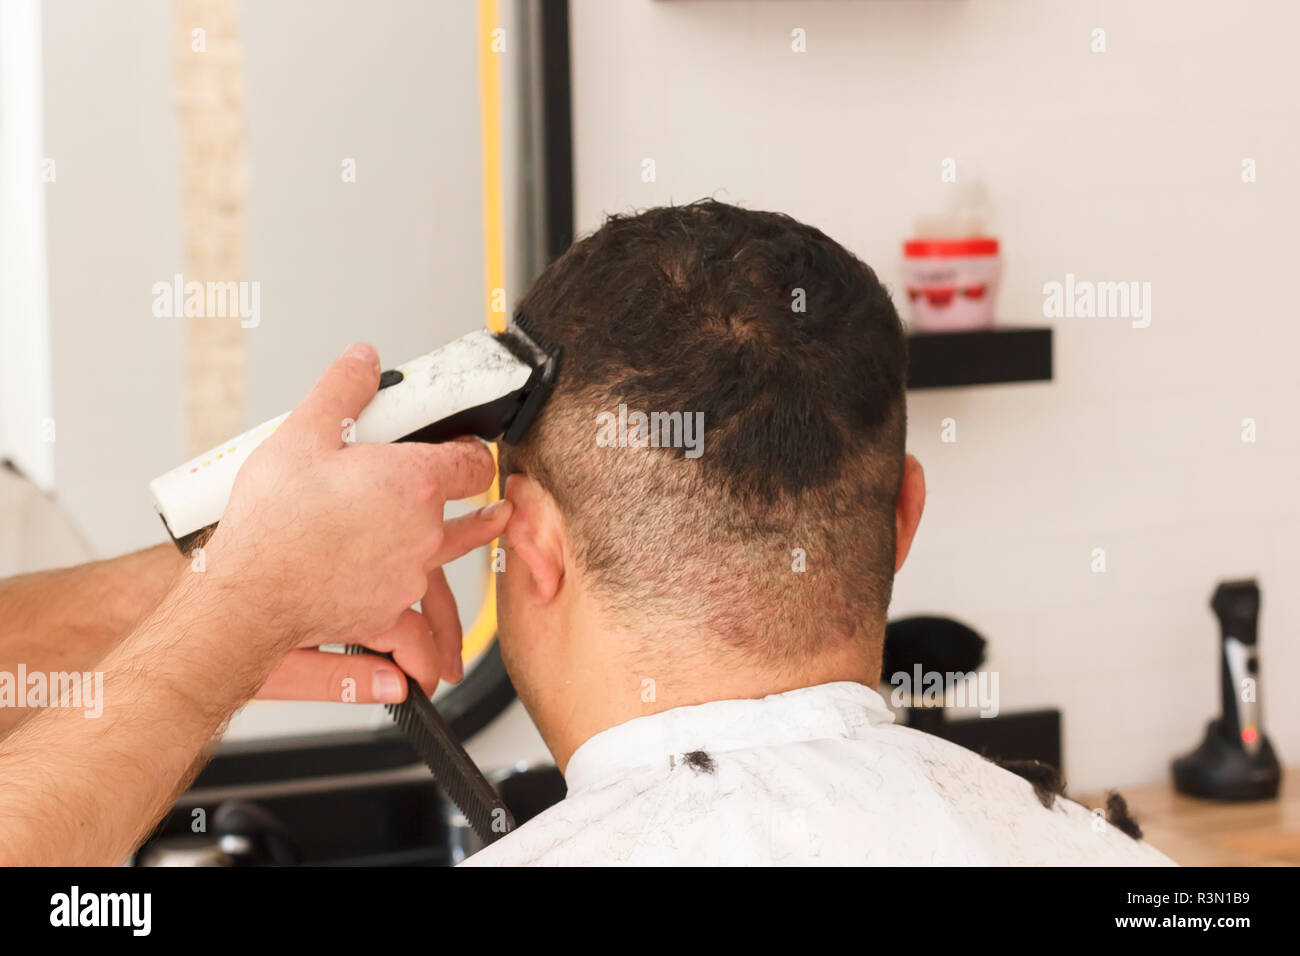 Rückansicht des Menschen immer kurze Haare schneiden mit Friseur mit einem  haarschneider Maschine Stockfotografie - Alamy